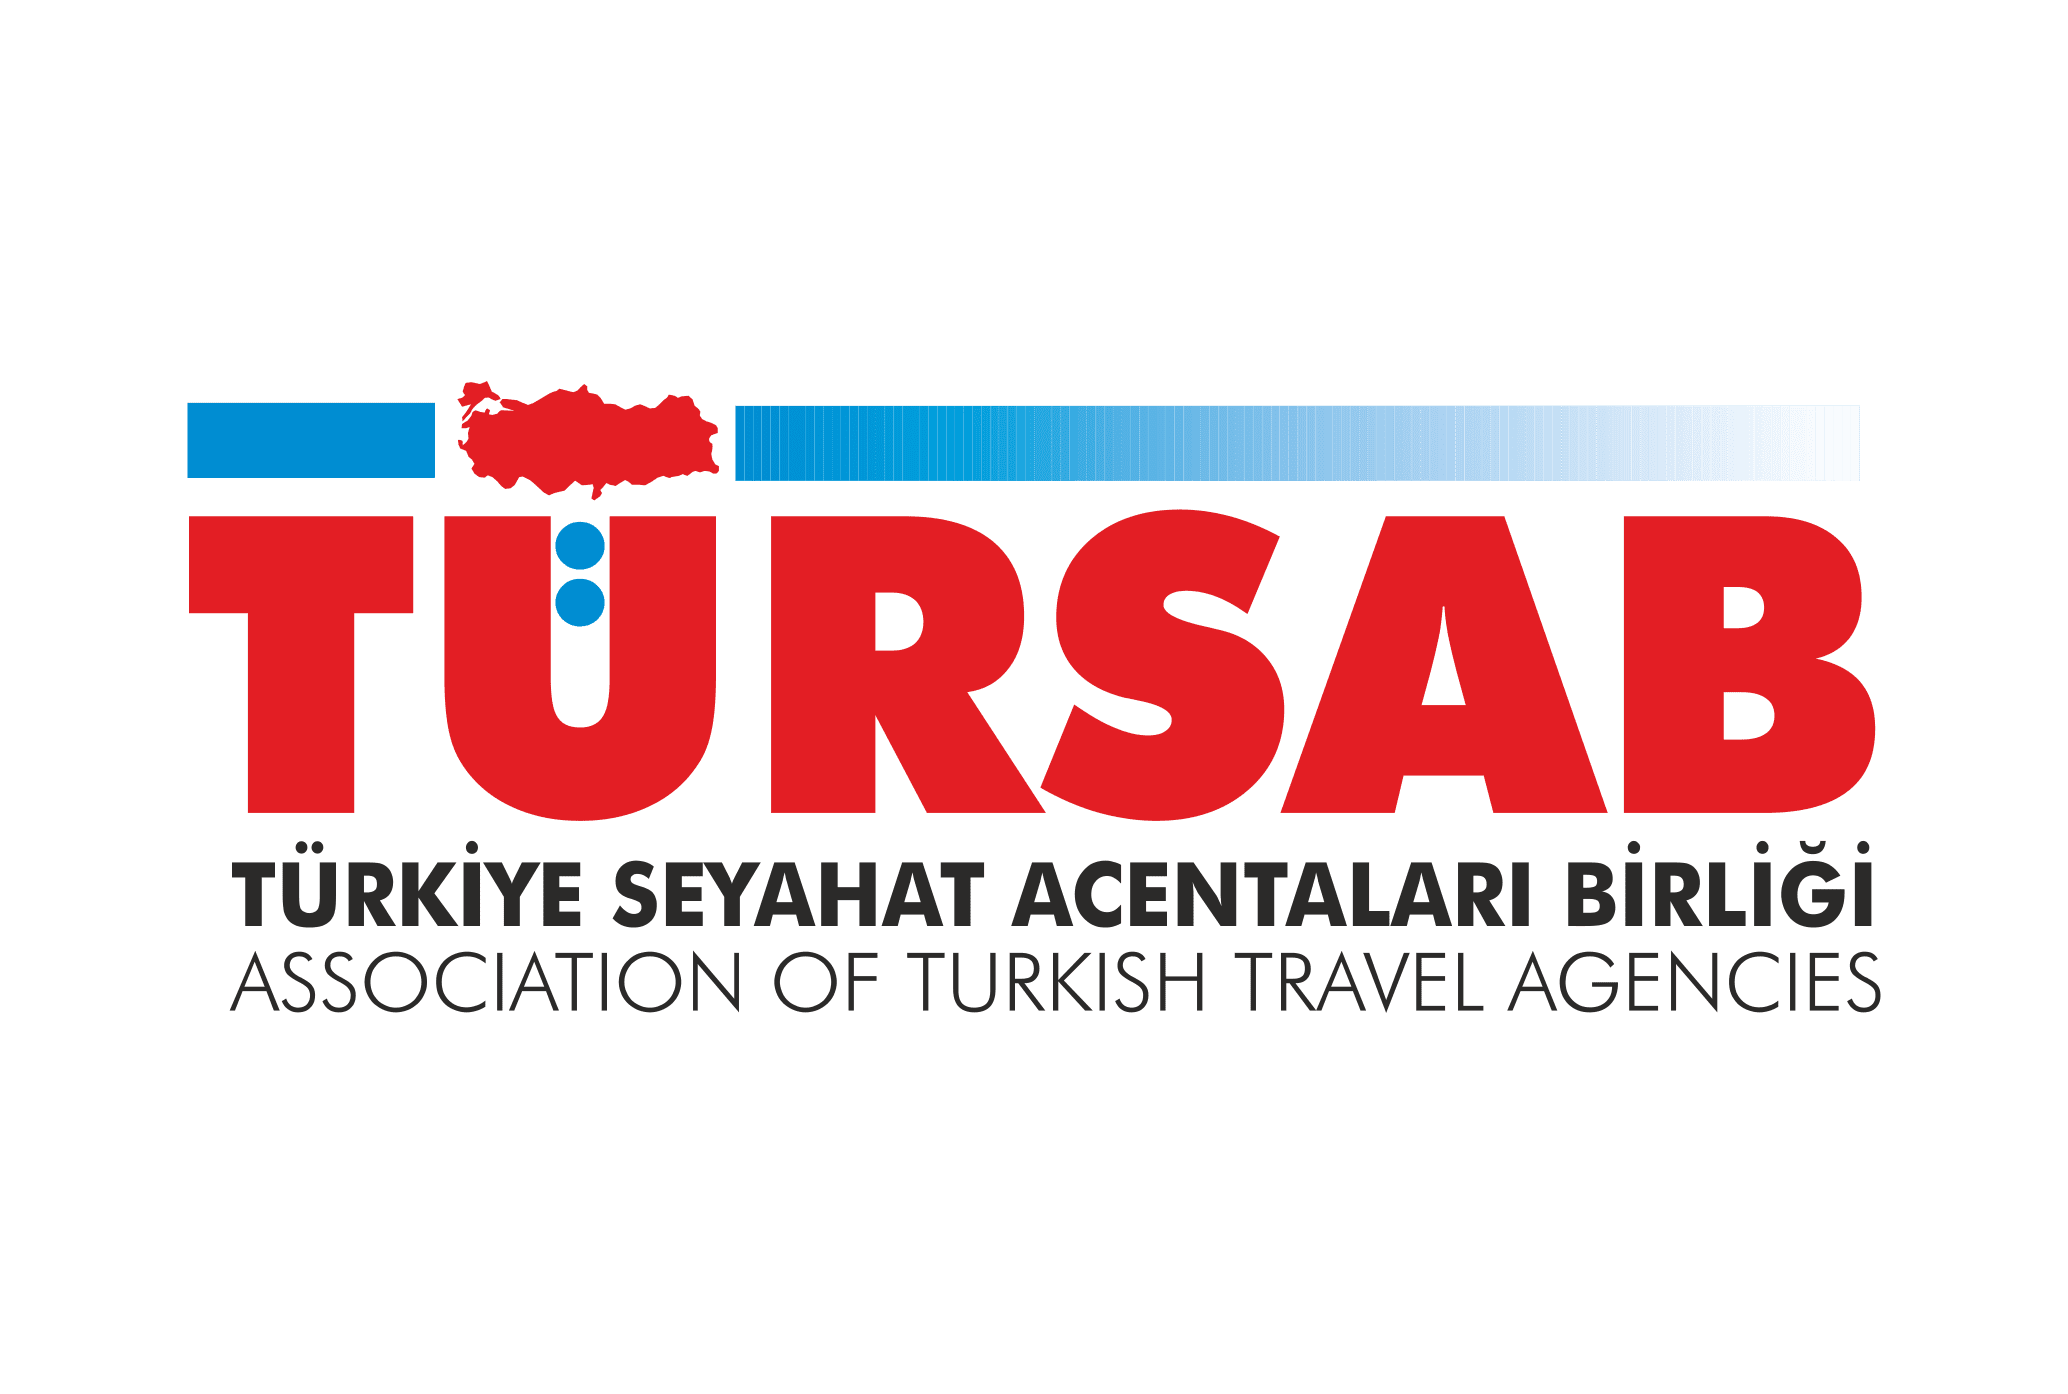 TURSAB (Türkiye Seyahat Acentalar Birliği)